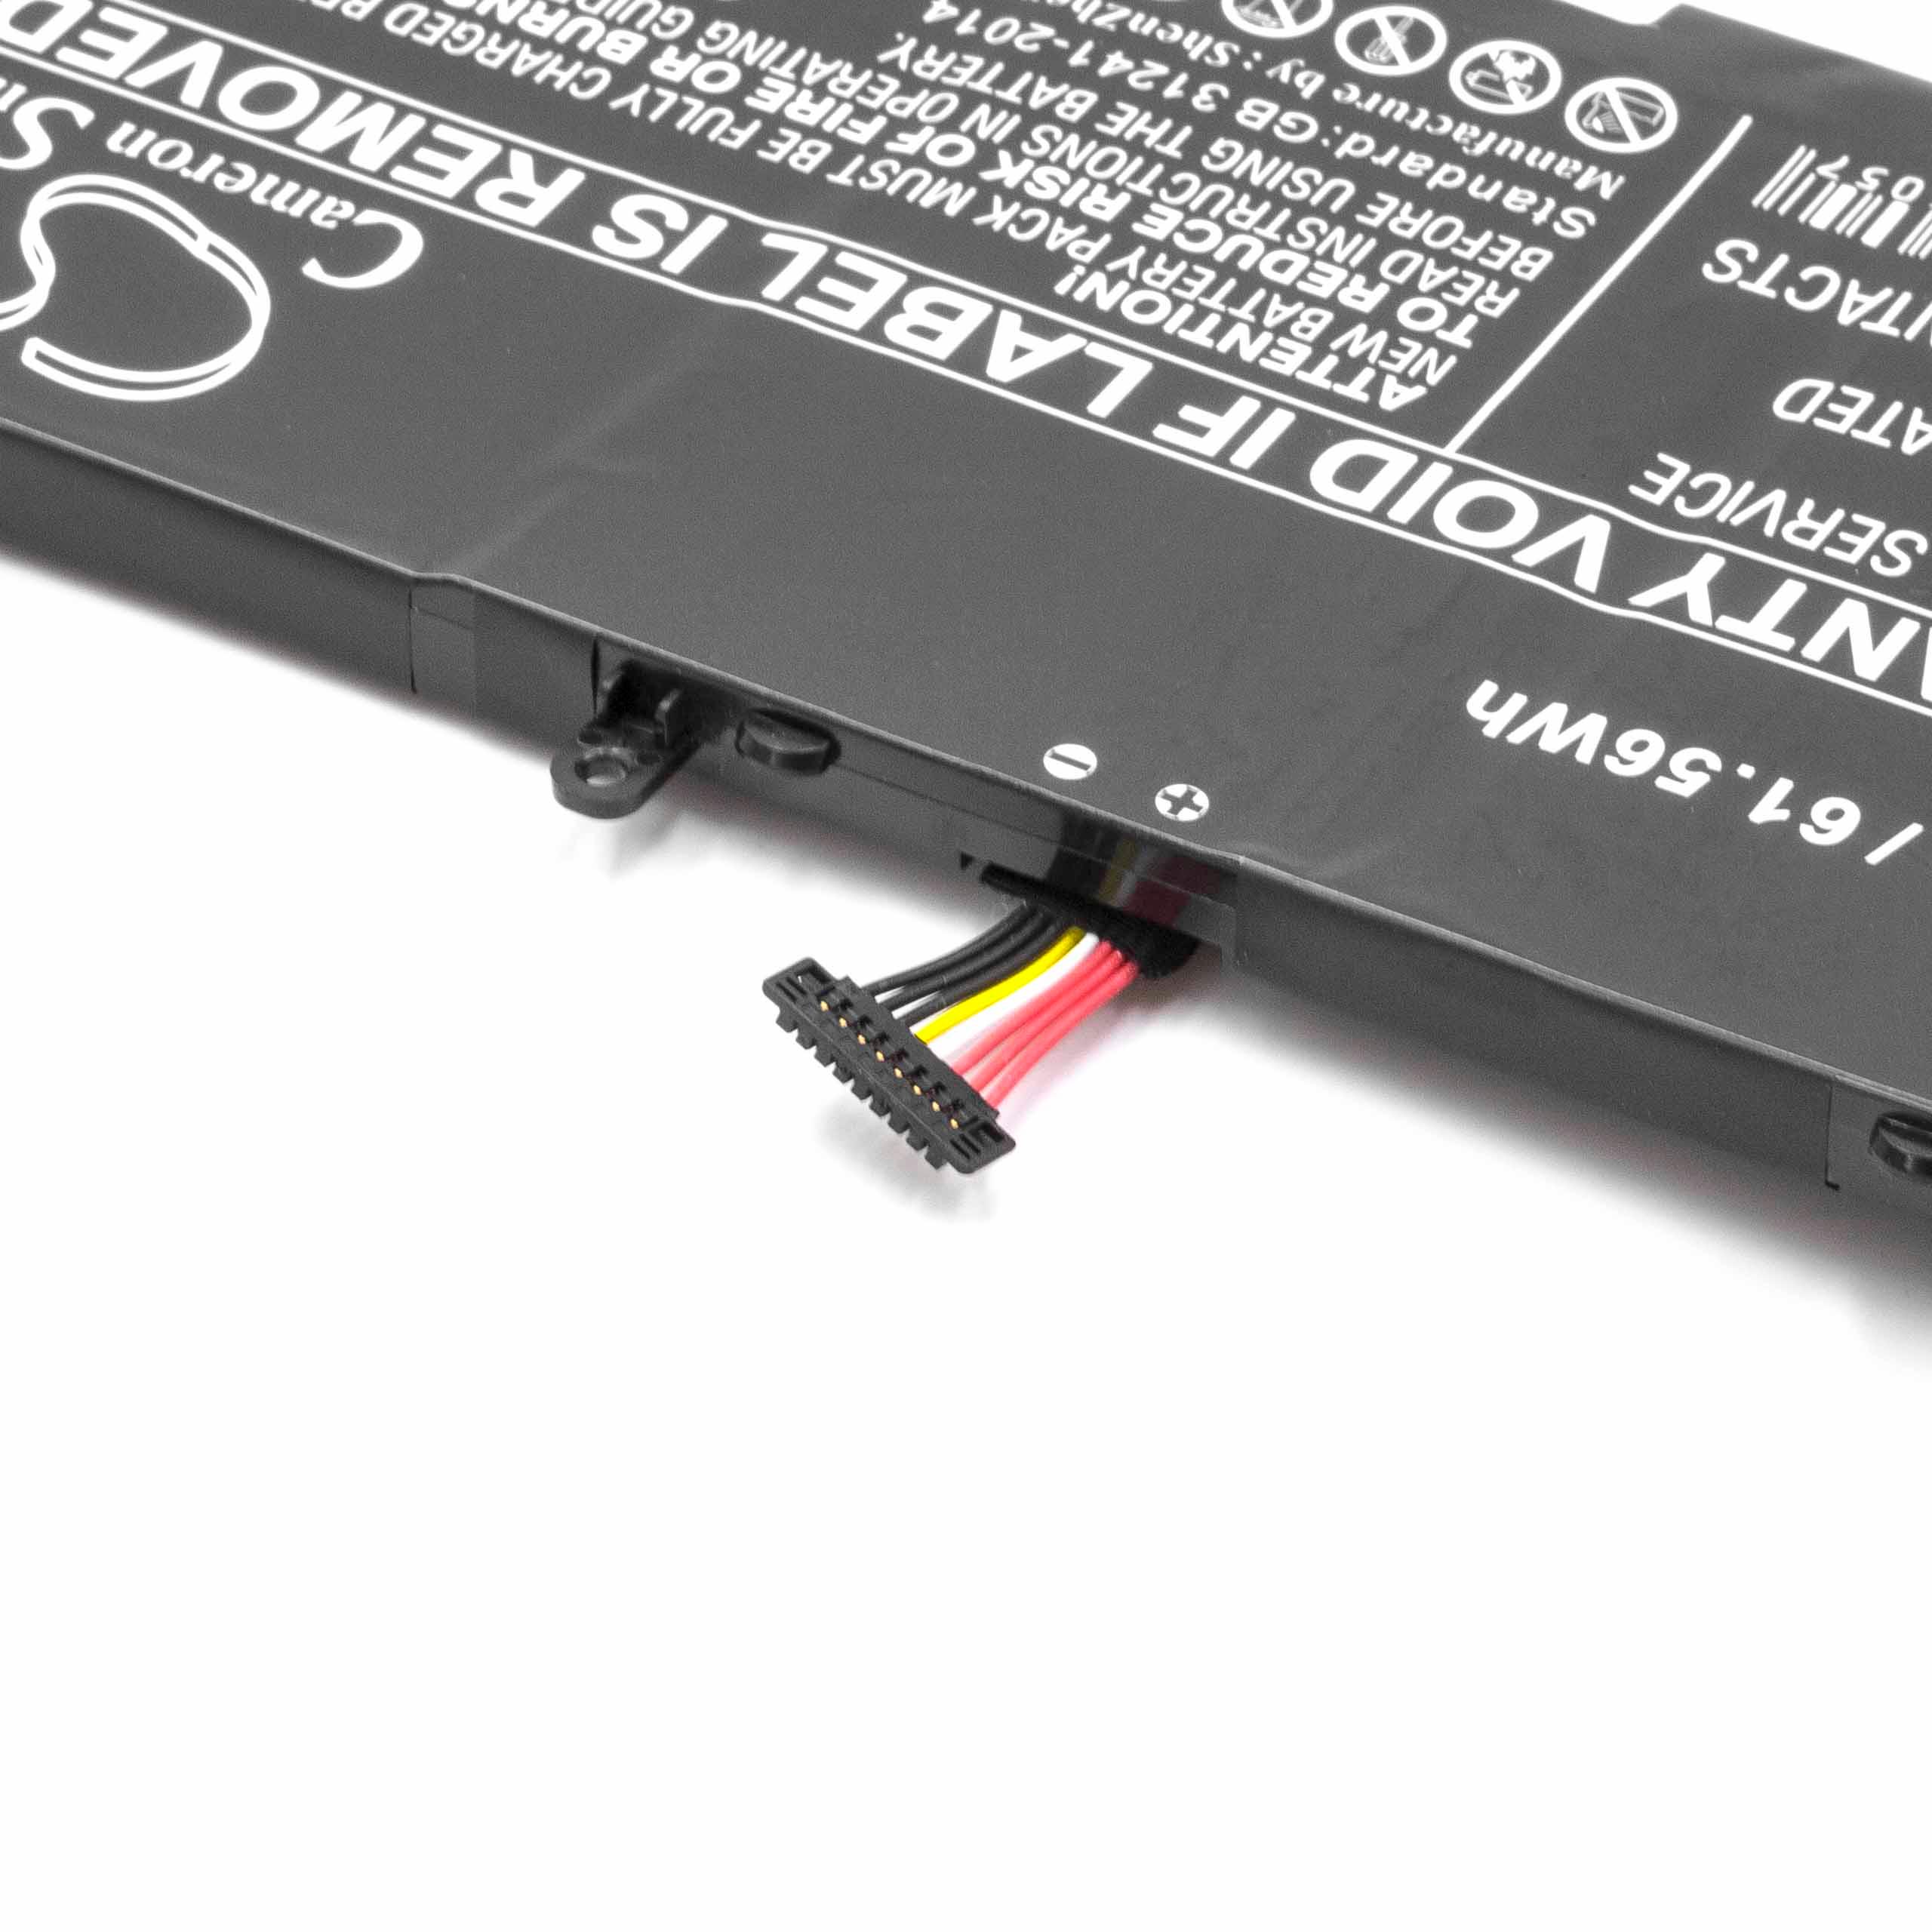 Batterie remplace Asus B41N1526, 0B200-0194000 pour ordinateur portable - 4050mAh 15,2V Li-polymère, noir